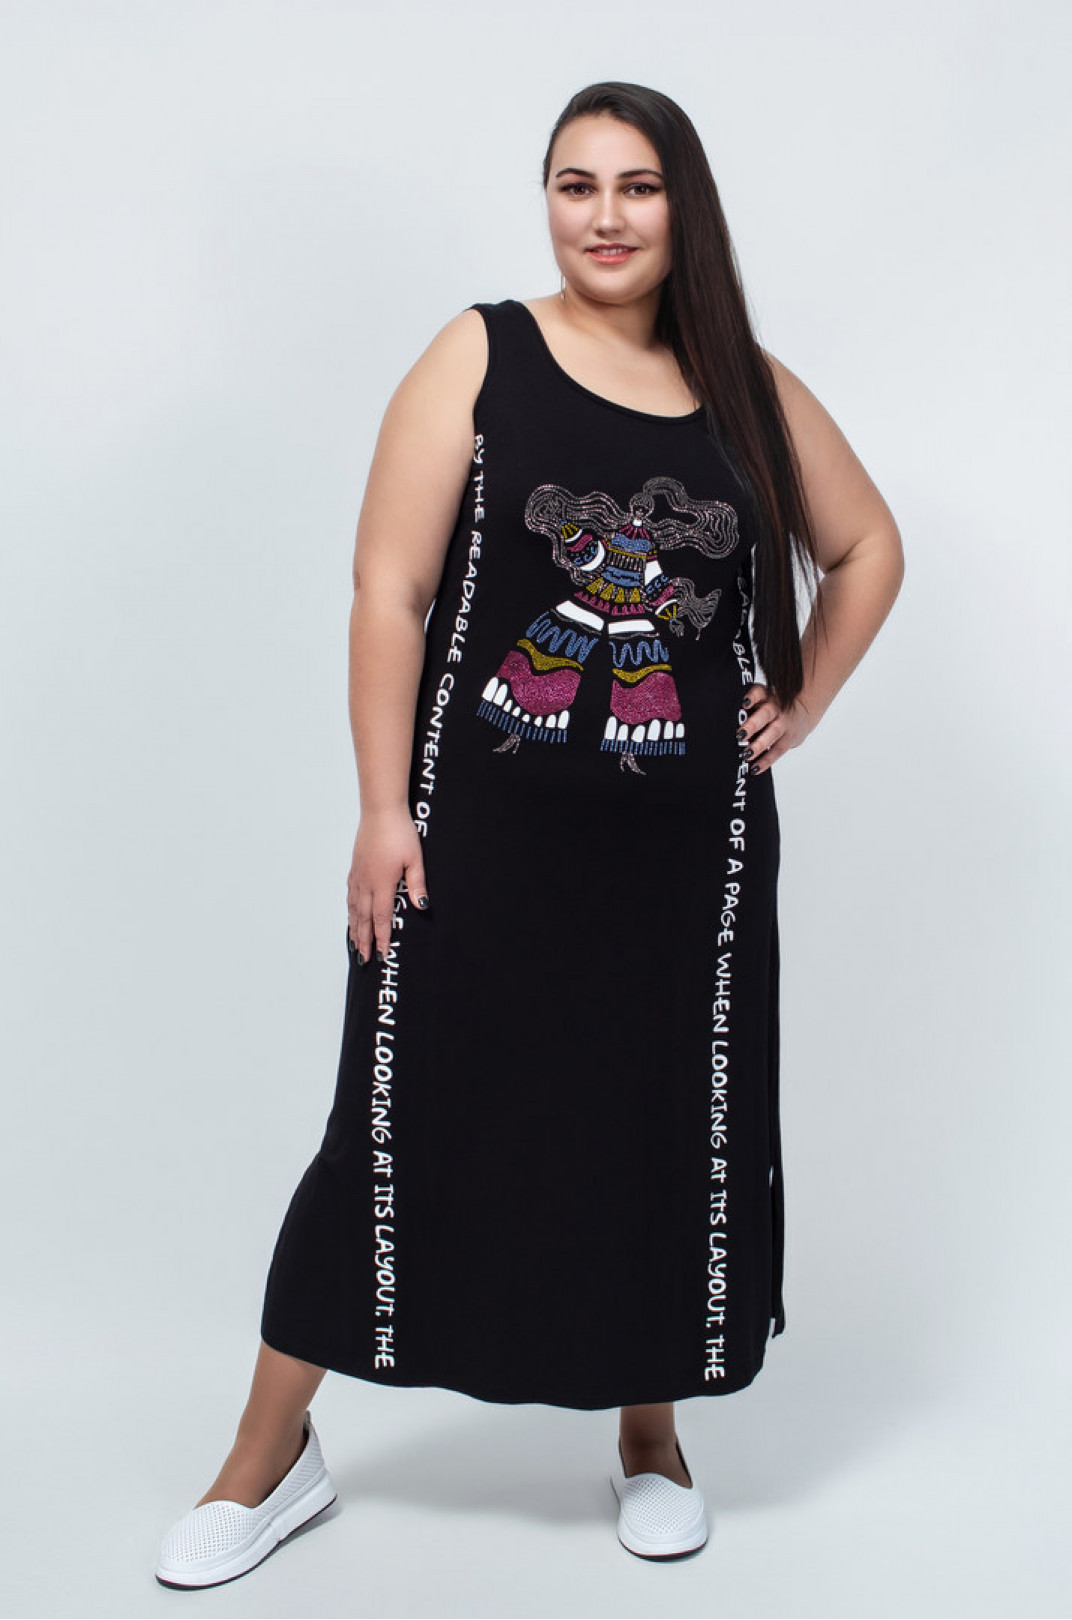 Сарафан-платье приталенное декорированное принтом из стразов батал